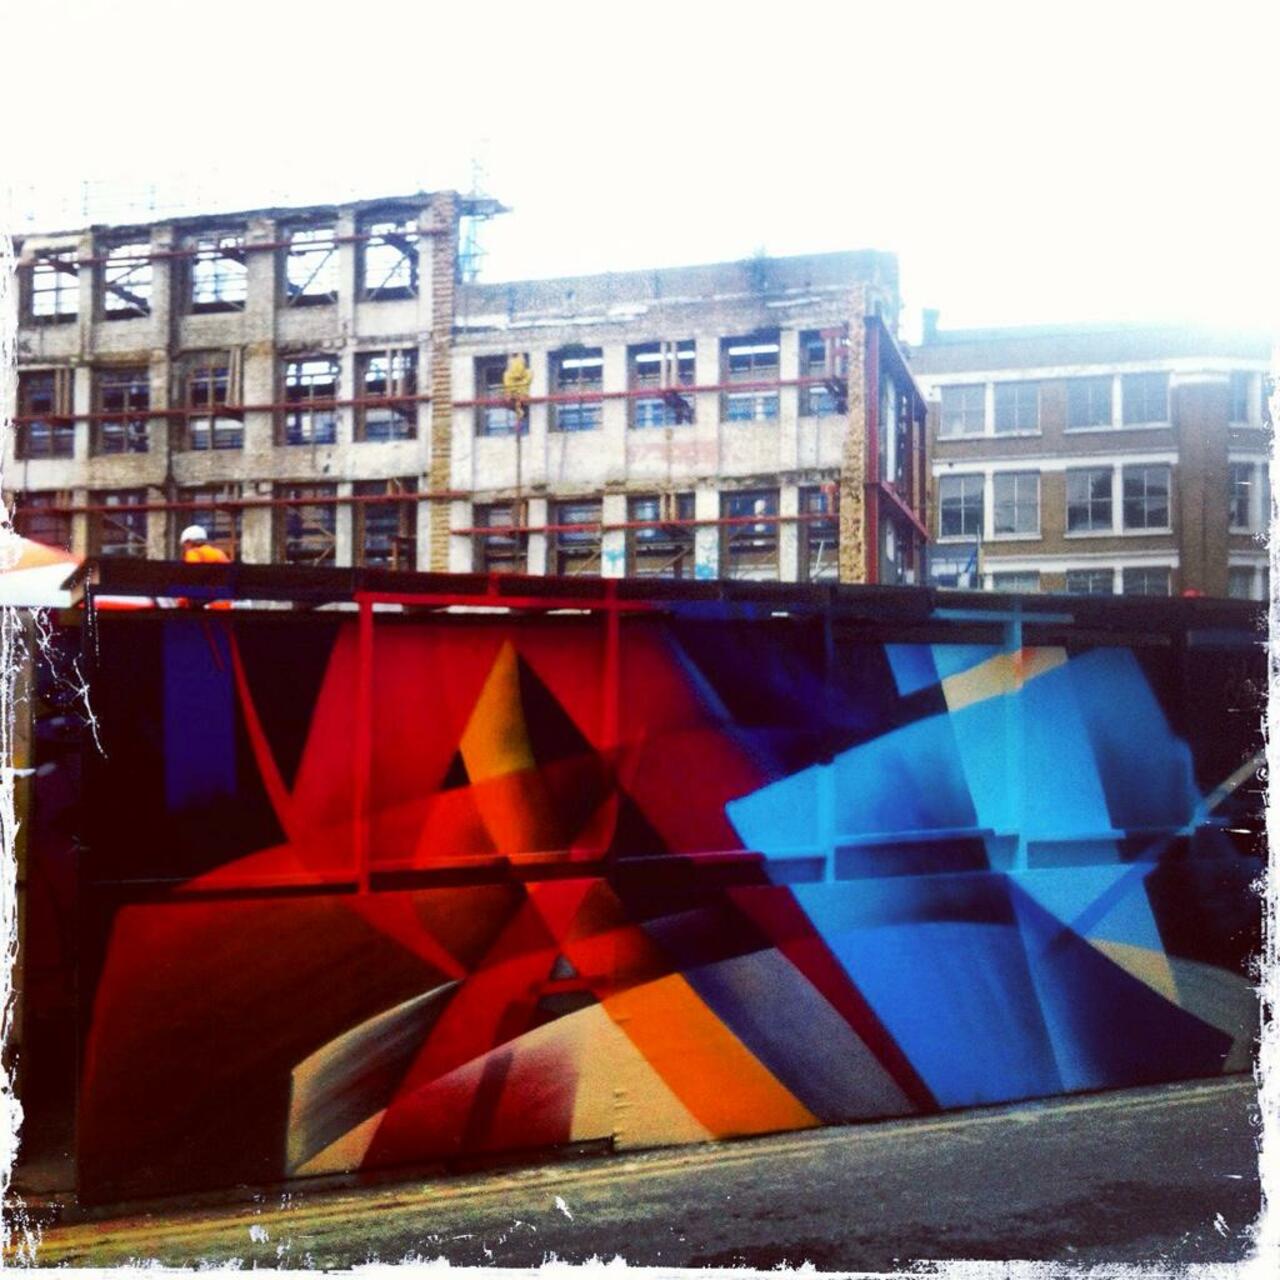 RT @BrickLaneArt: Work by Mad C on Leonard Street #art #graffiti #streetart http://t.co/DBq9Pwyl7E